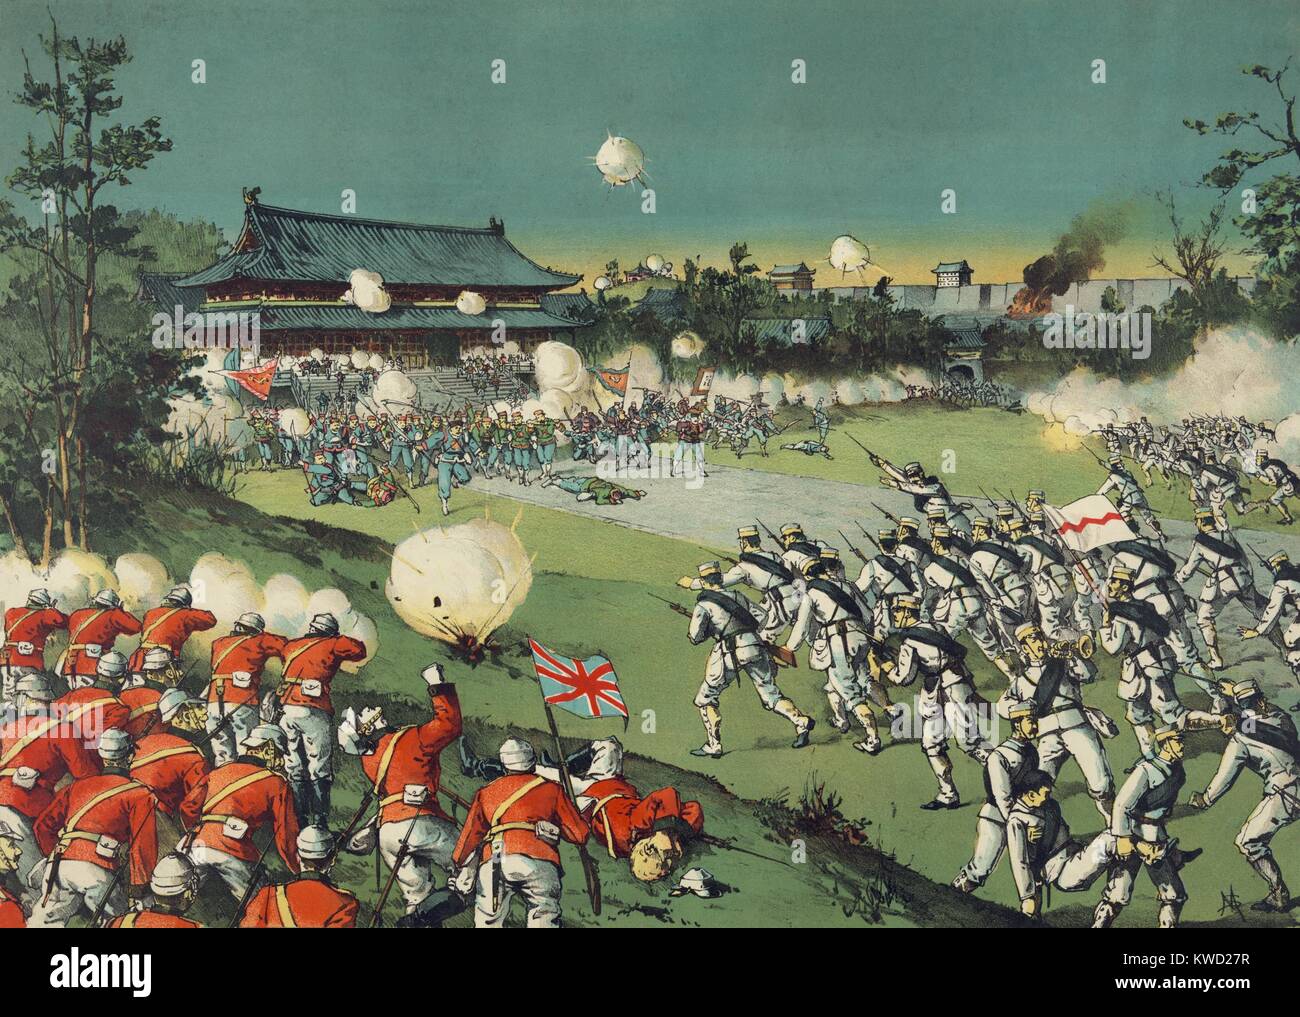 Británicos y soldados japoneses asaltar el boxeador fuerzas en Castillo Imperial, agosto de 1900. Lucharon dentro de la Ciudad Prohibida, el complejo del palacio en el centro de Beijing, China, durante la rebelión de los Bóxers (BSLOC 2017 20 30) Foto de stock